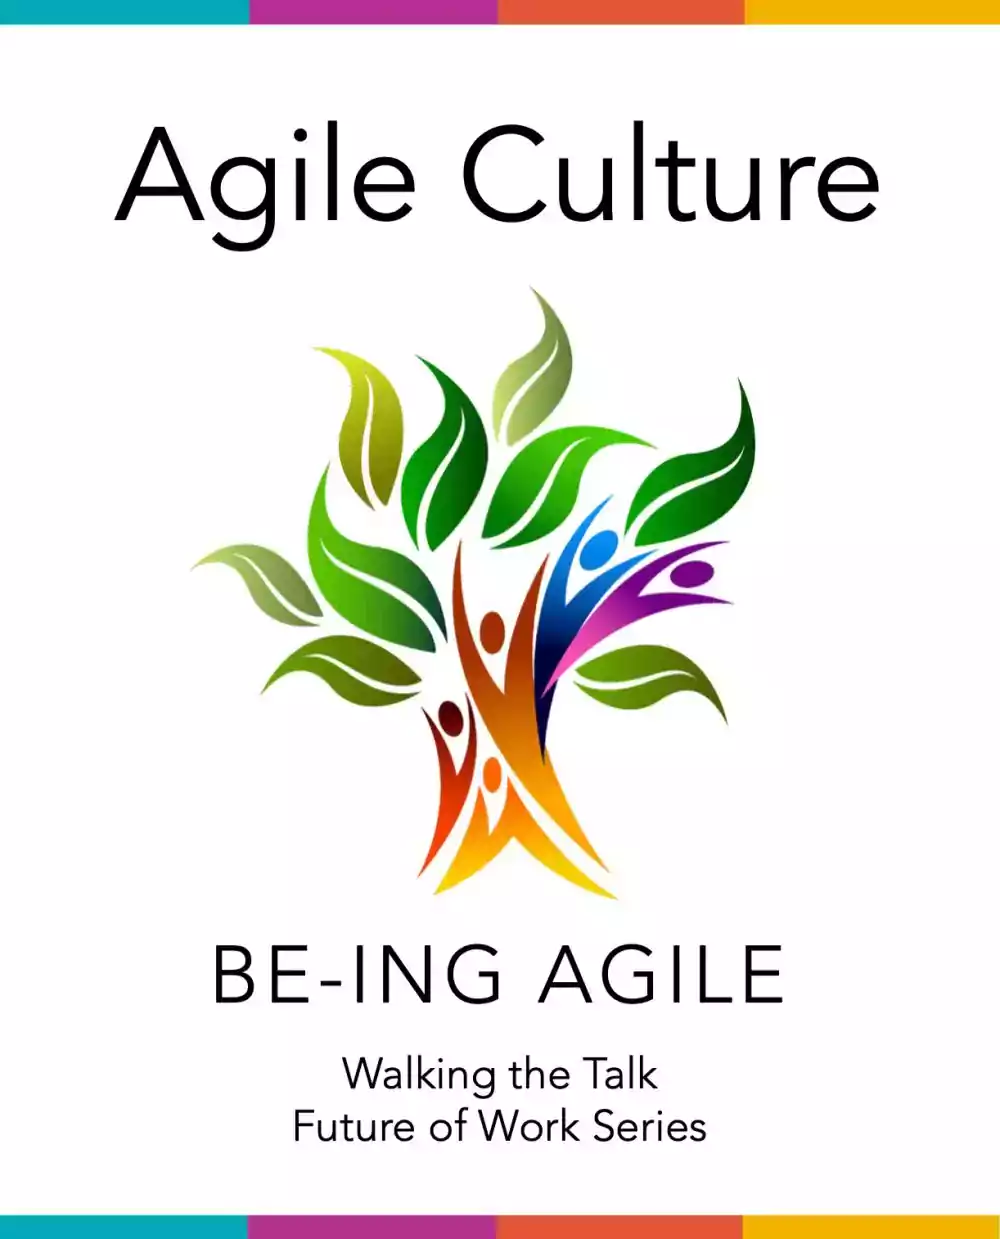 Agile culture